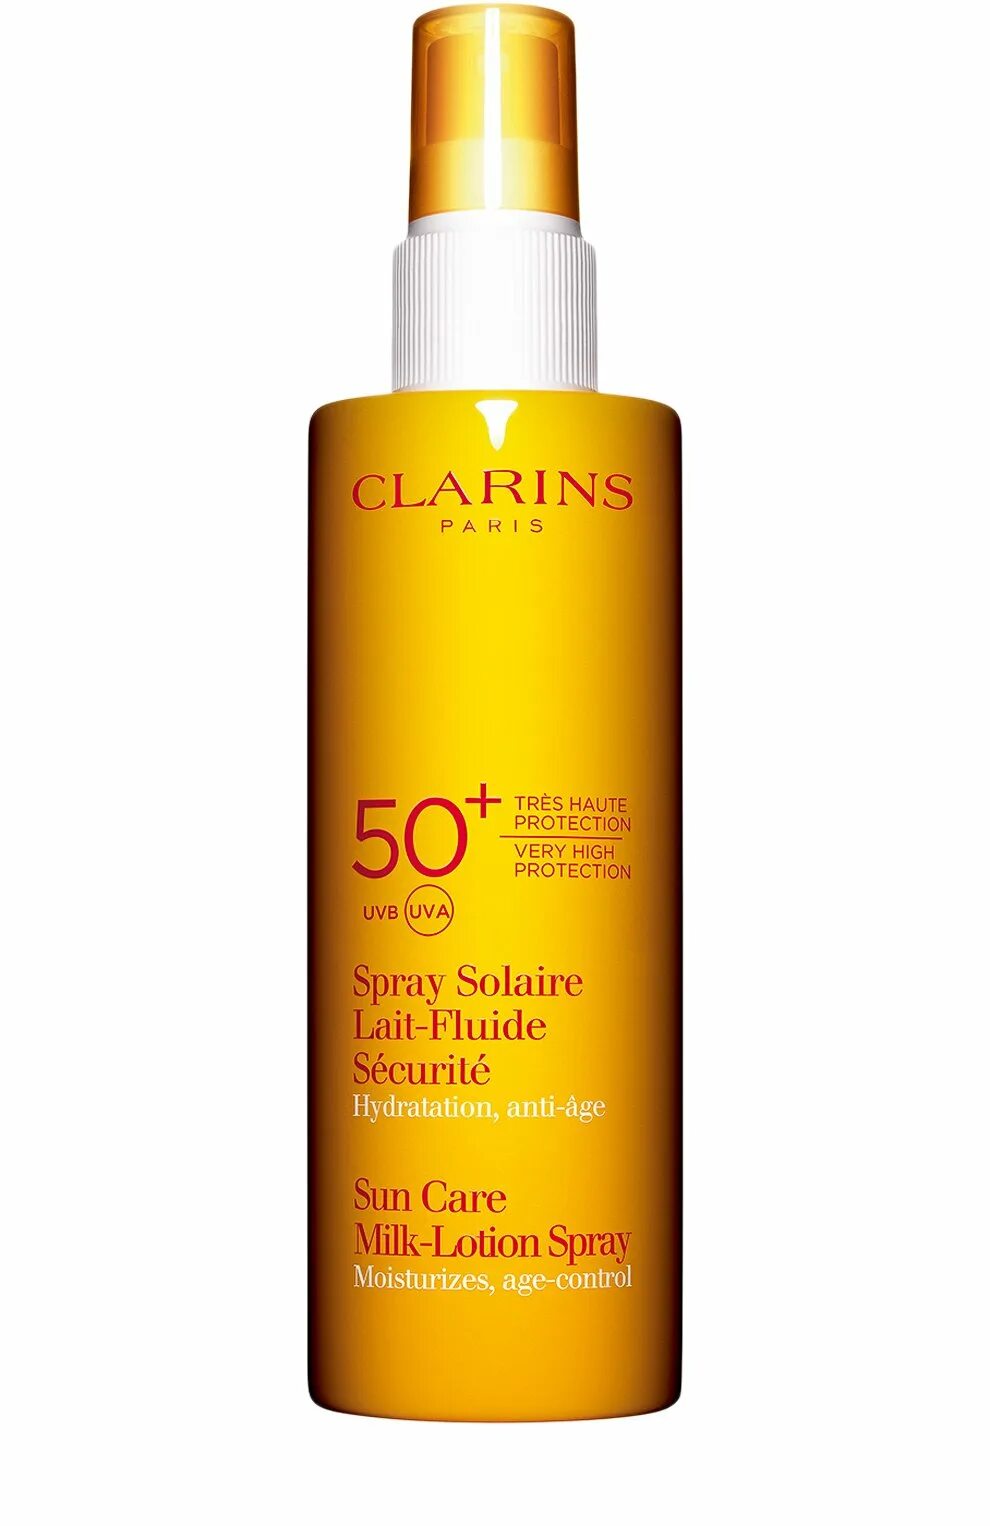 Солнцезащитное молочко для тела spf 50. Clarins SPF 50. Молочко для тела солнцезащитное Clarins 50. Спрей солнцезащитный 50 SPF Clarins. Huile-en-brume solaire солнцезащитное масло-спрей для тела и волос SPF 30.